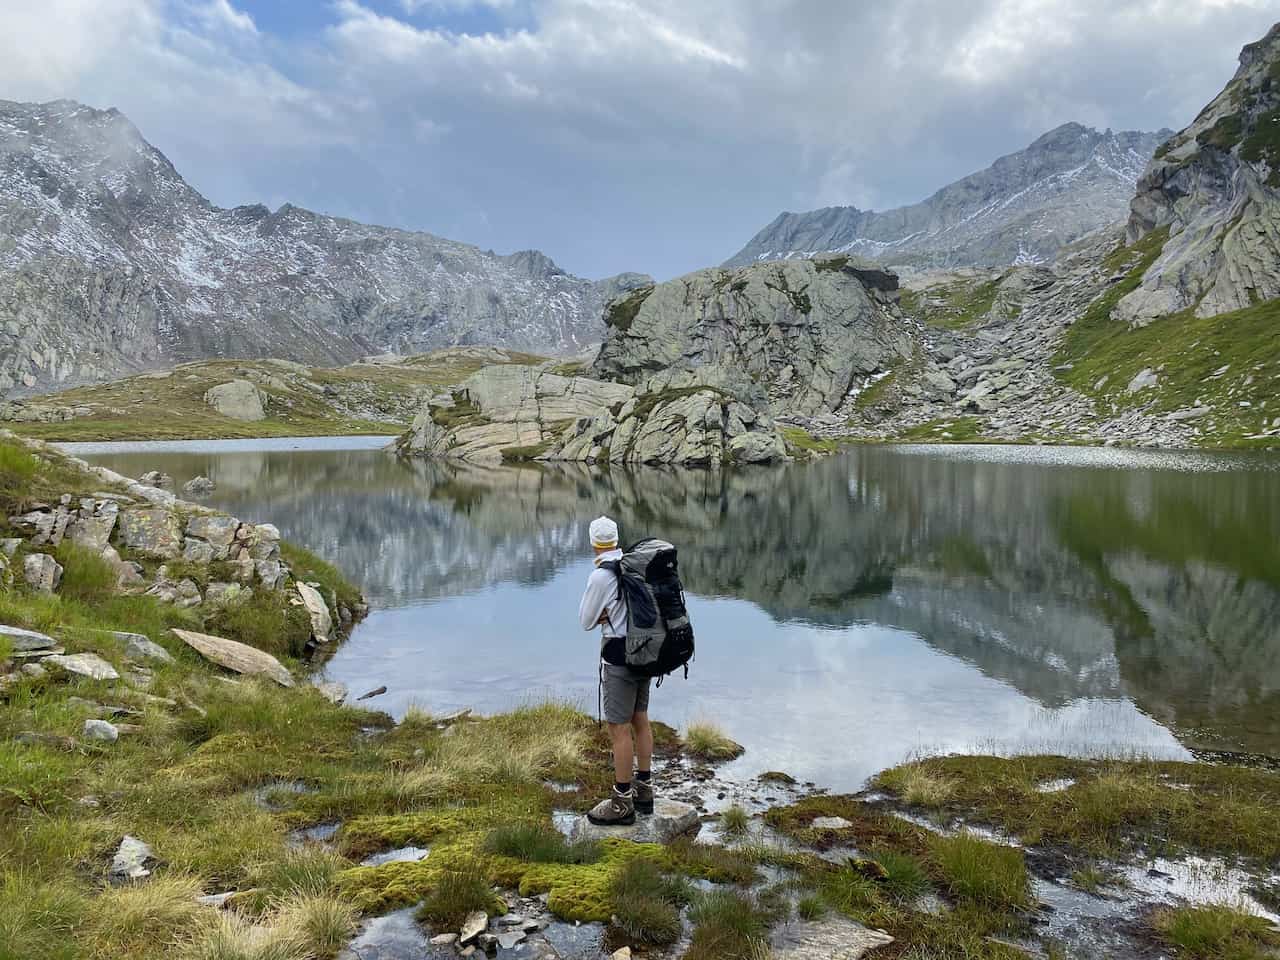 Bergsee in unberührter alpiner Landschaft, Mensch im Vordergrund geniesst die spezielle Stimmung